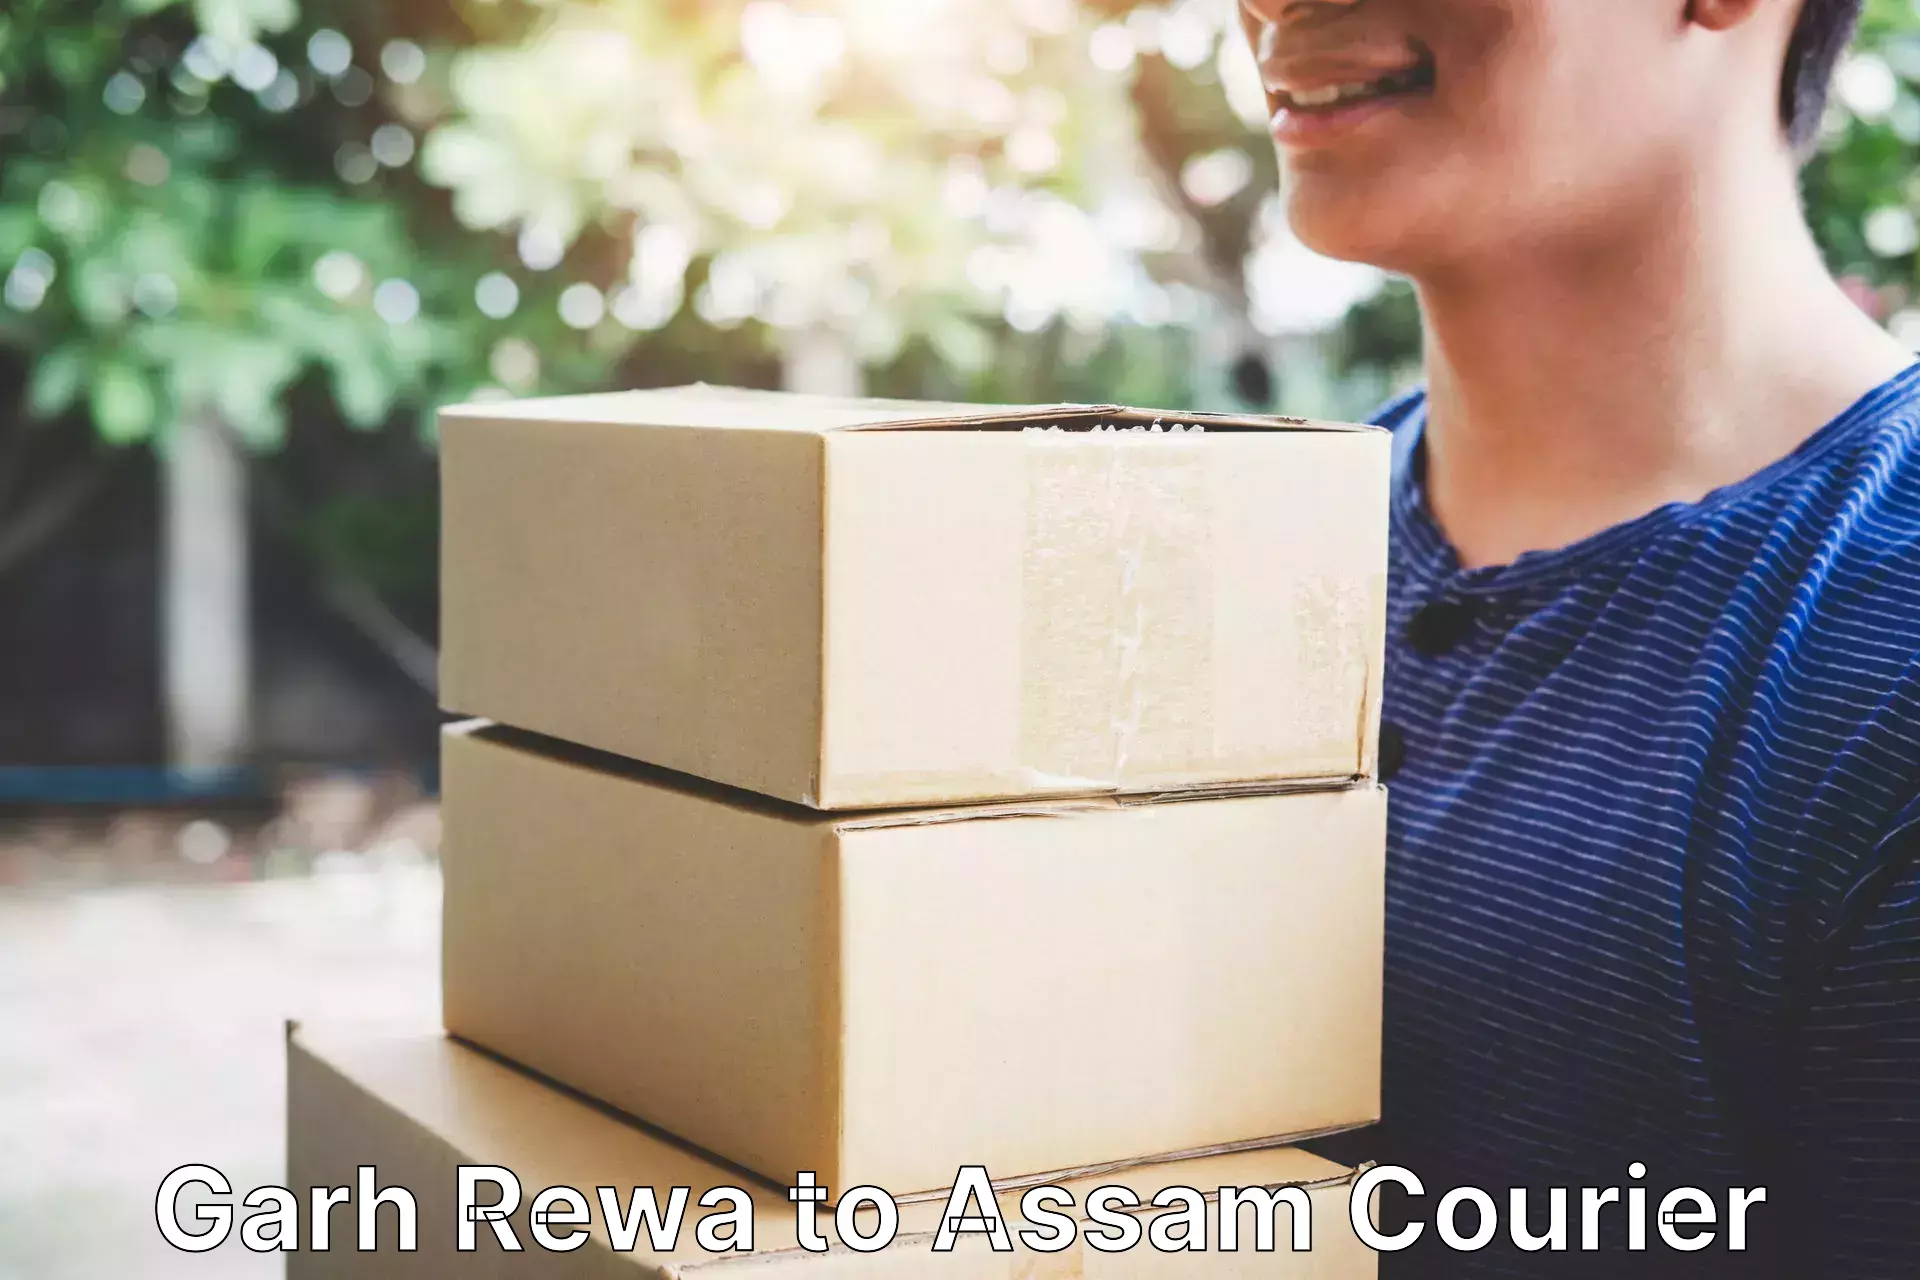 International courier rates Garh Rewa to Assam